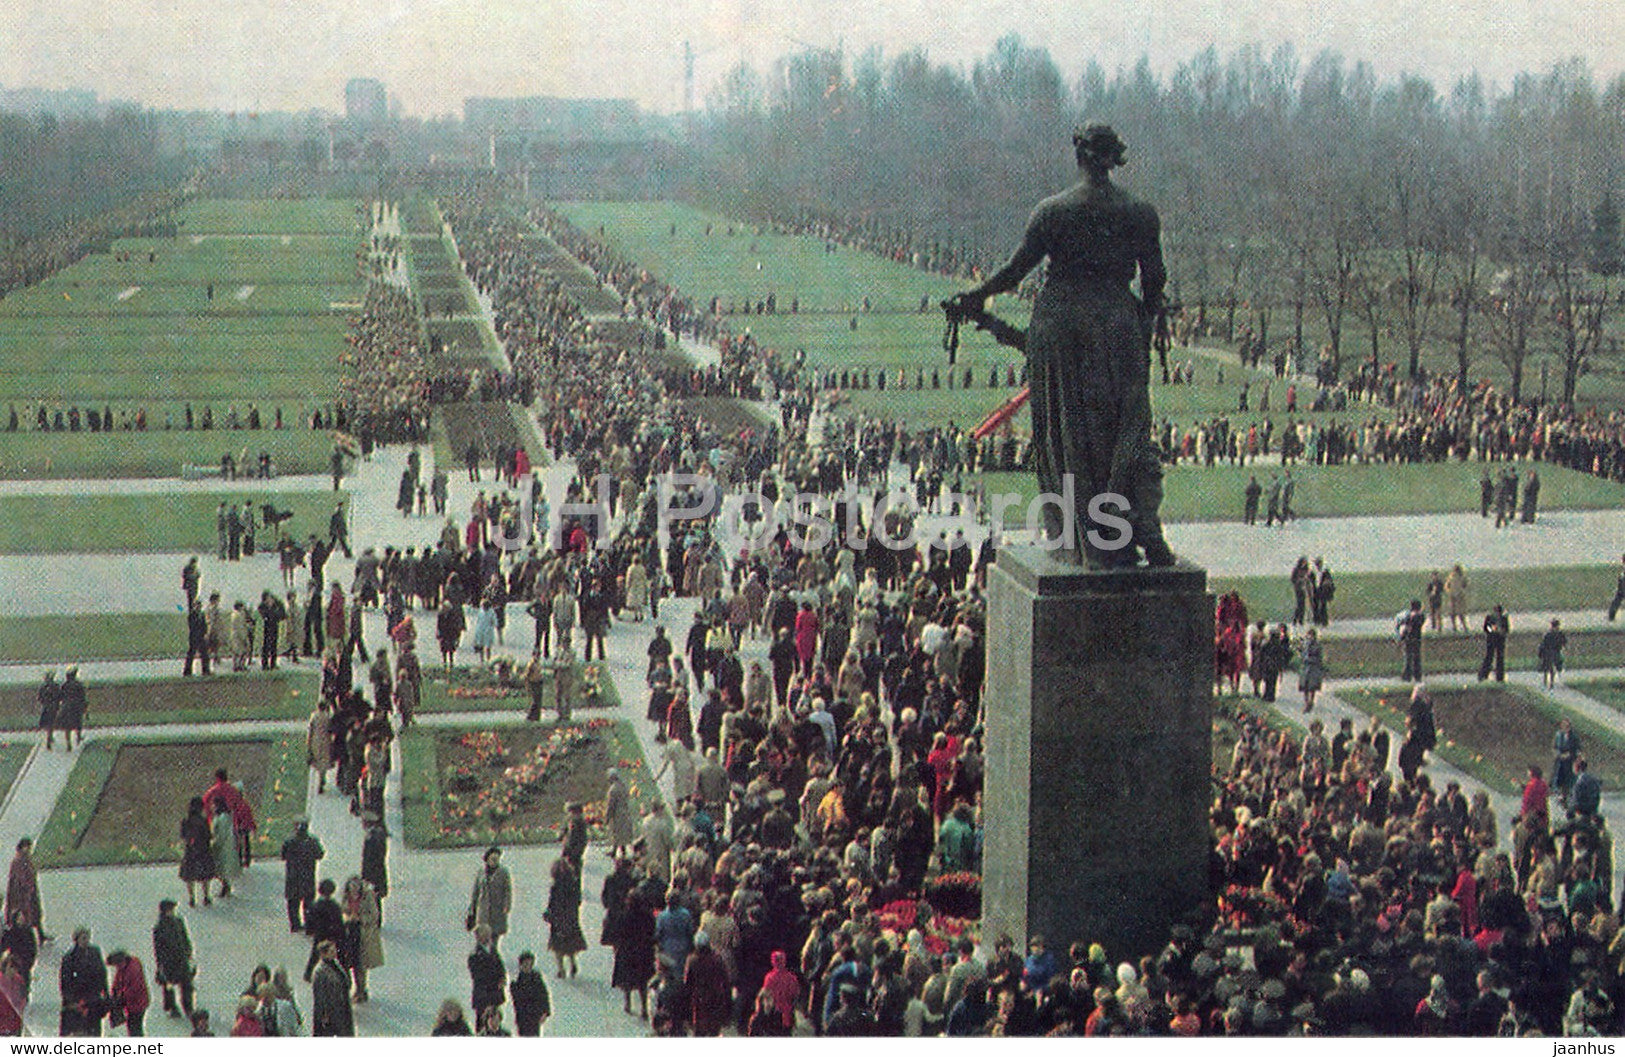 Leningrad - St Petersburg - Piskaryovskoye Memorial Cemetery - on victory day - 1981 - Russia USSR - unused - JH Postcards